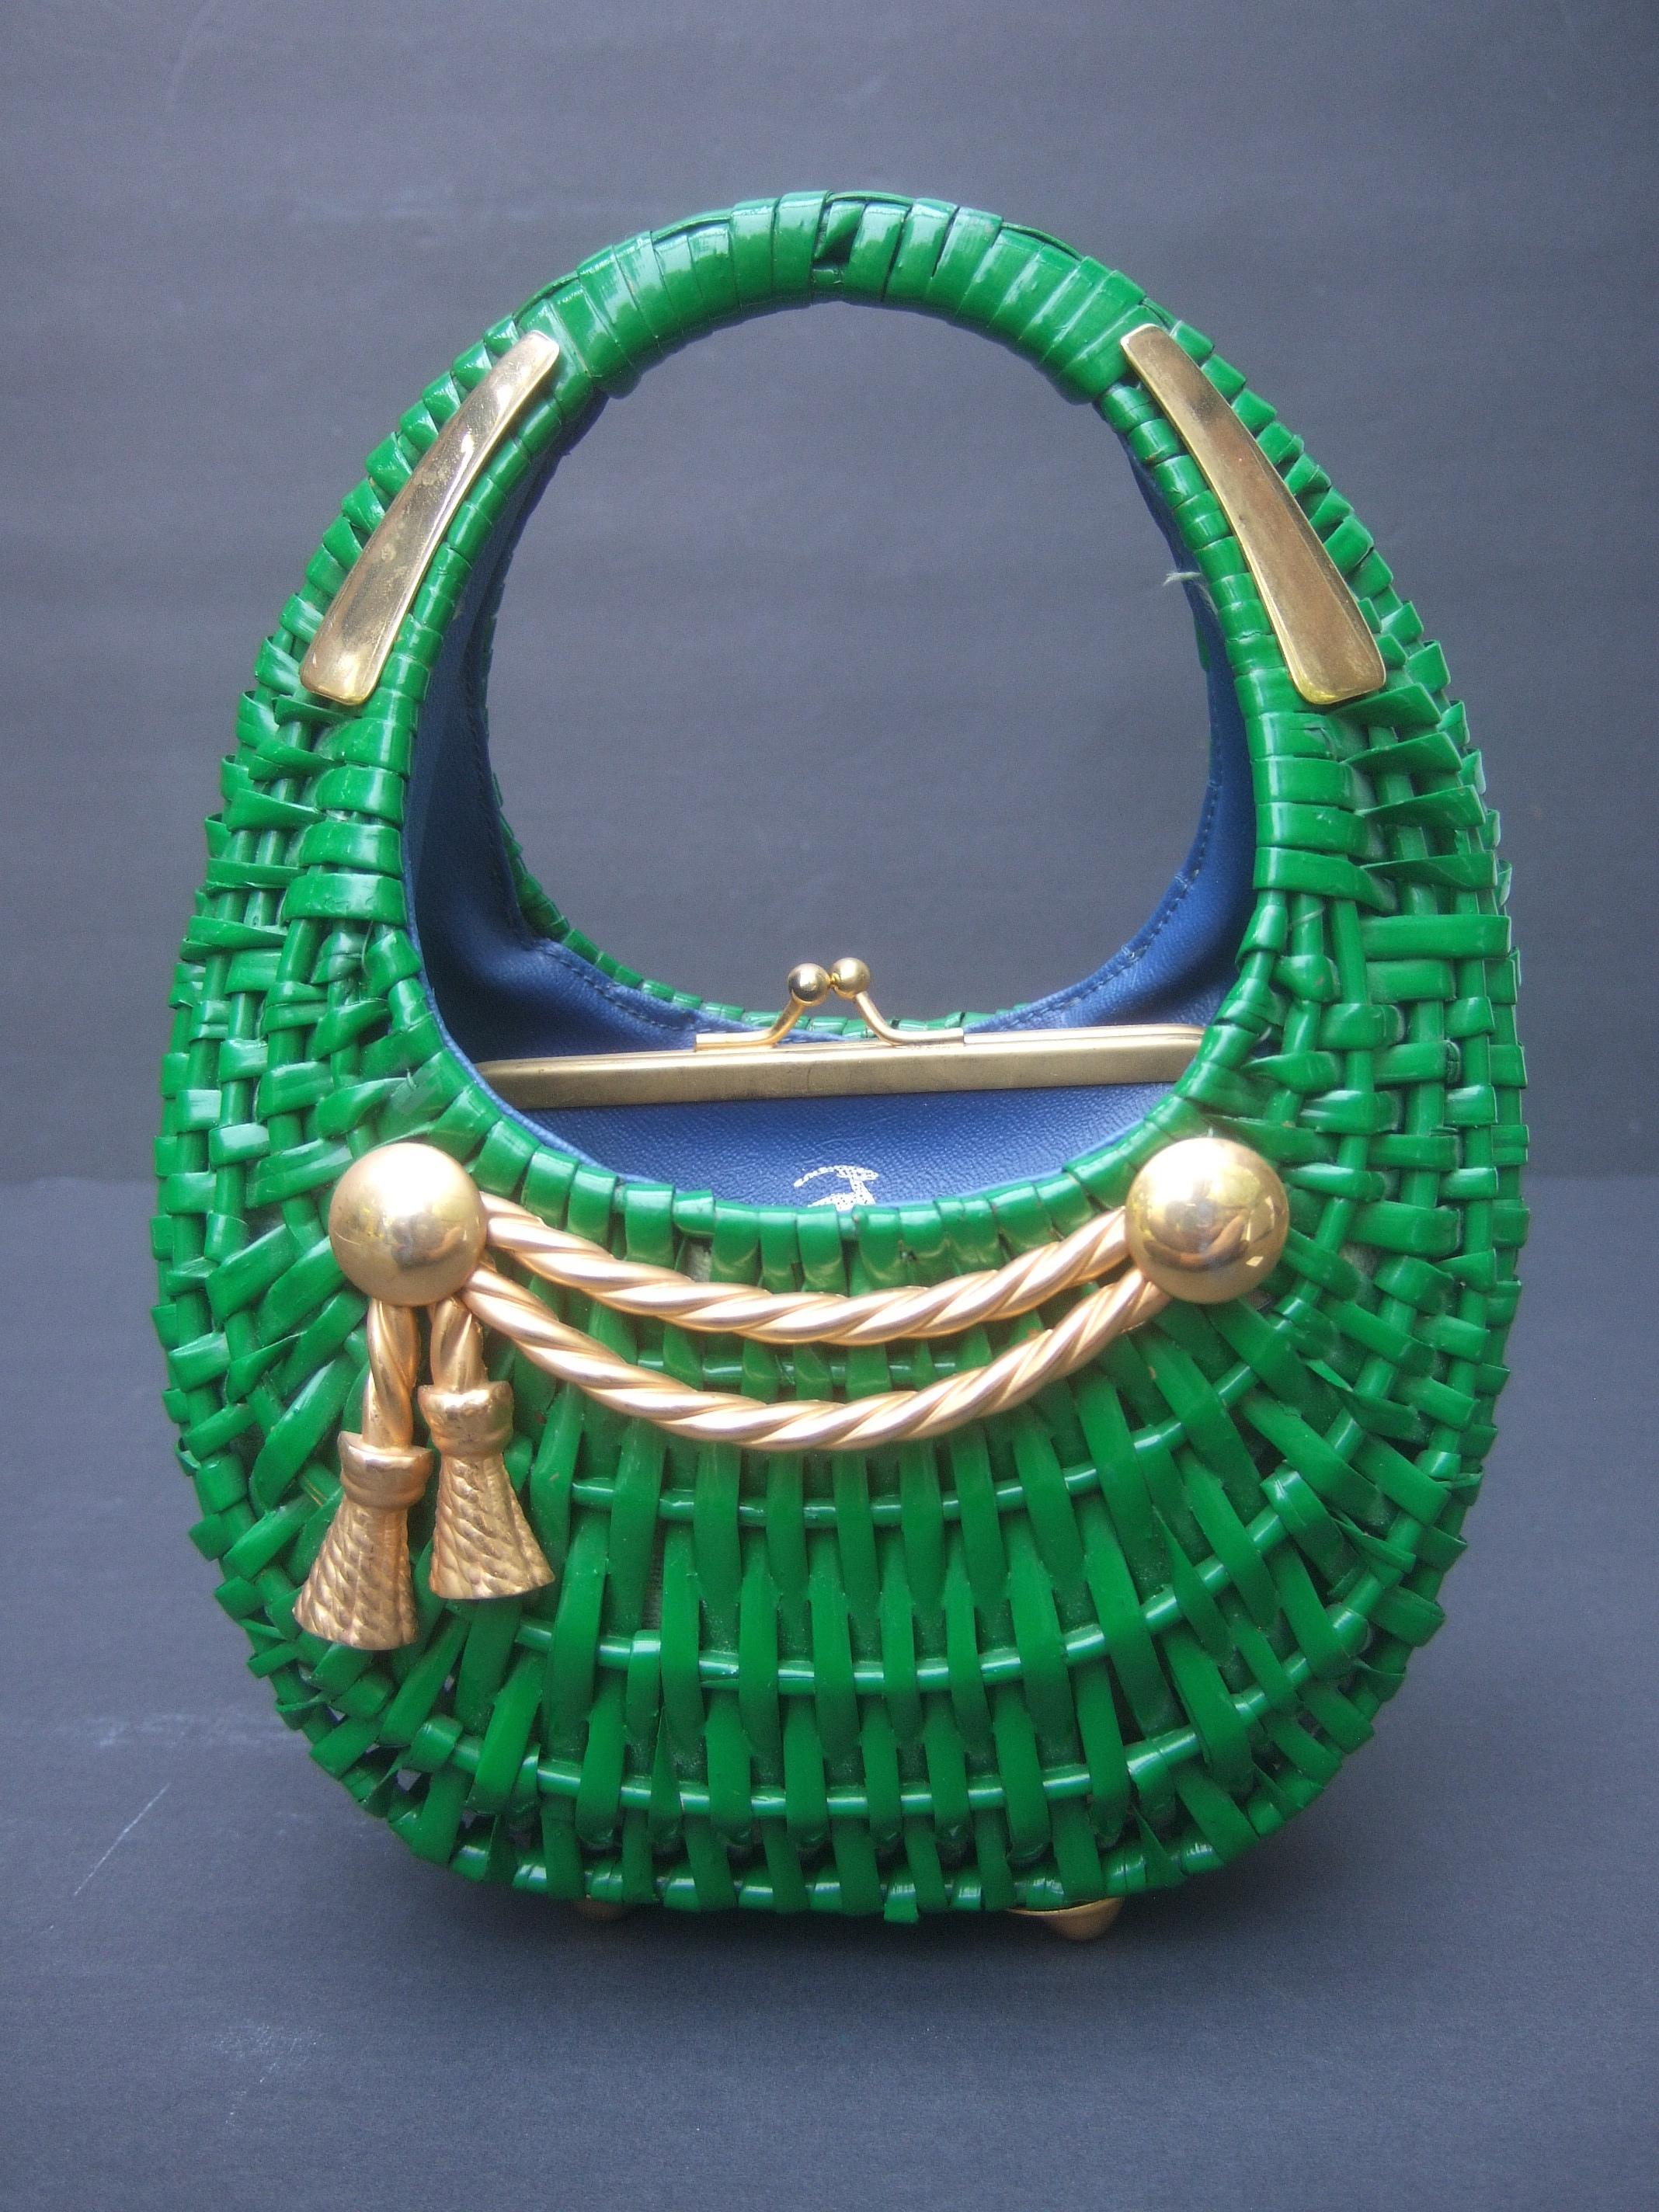 Women's 1970s Italian Kelly Green Wicker Diminutive Basket Shaped Handbag 